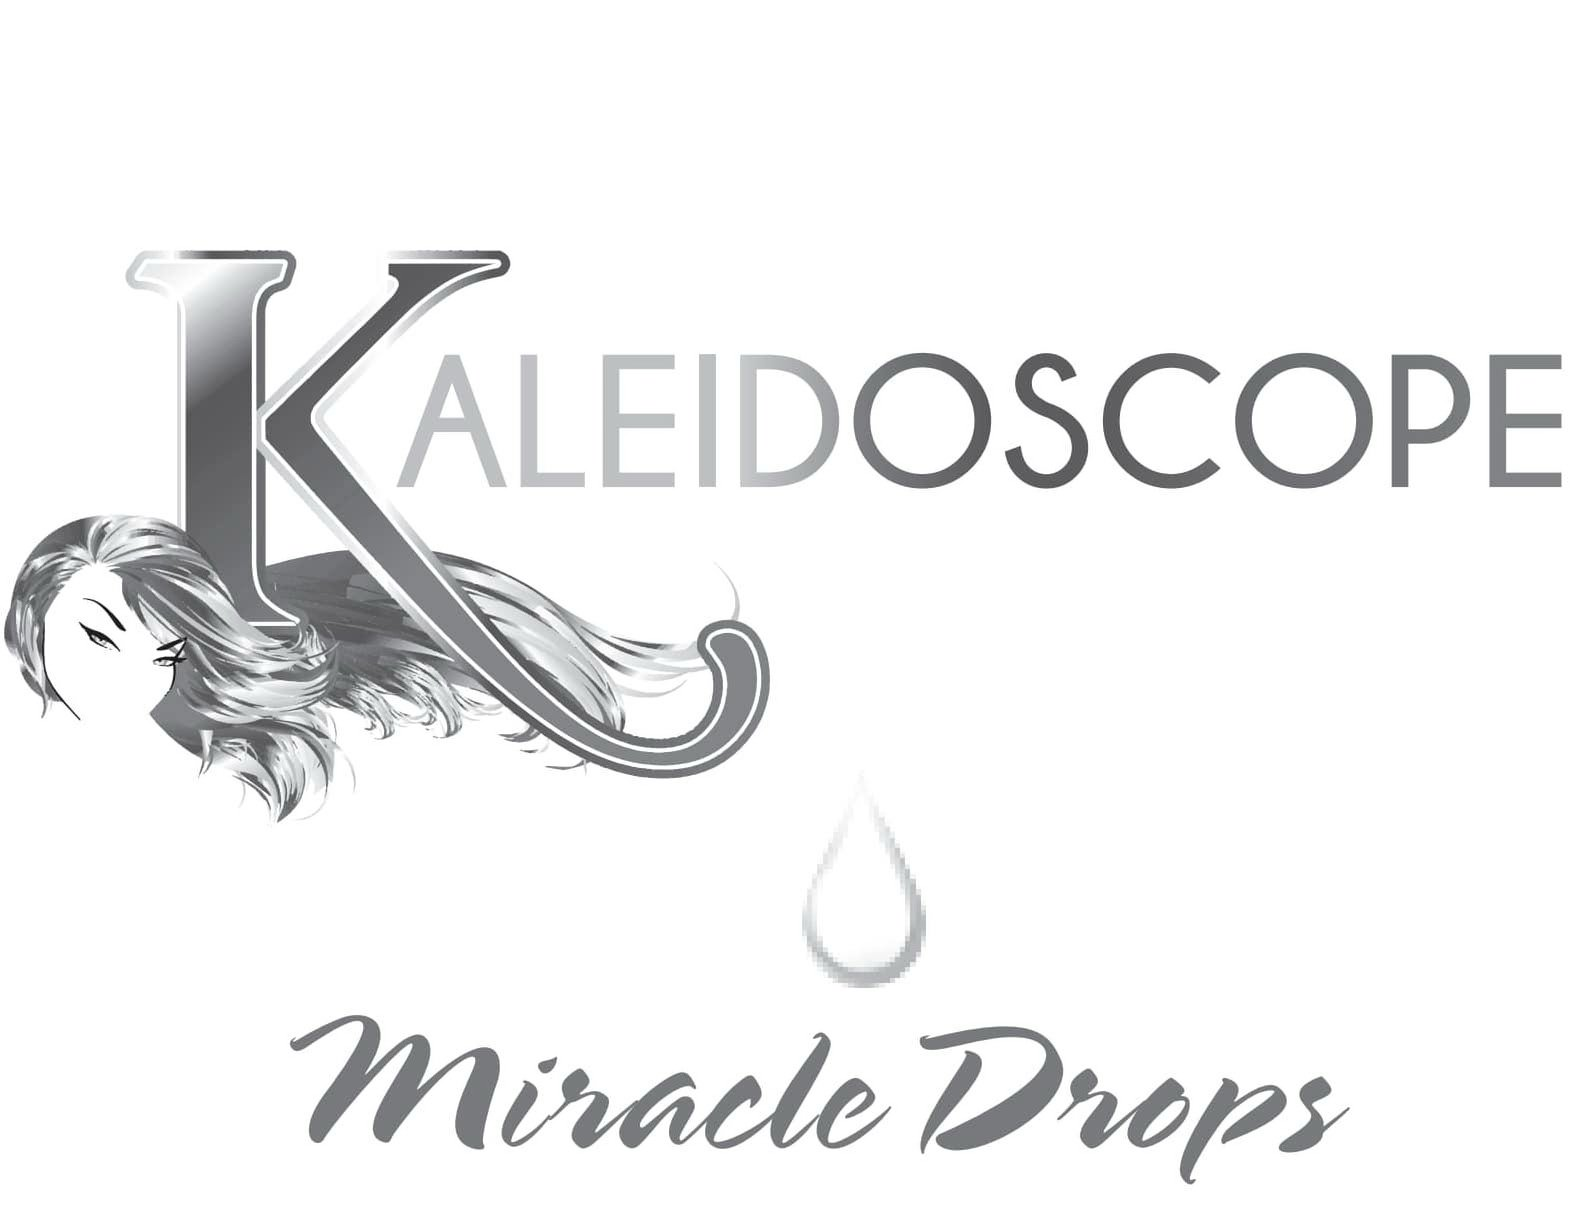  KALEIDOSCOPE MIRACLE DROPS